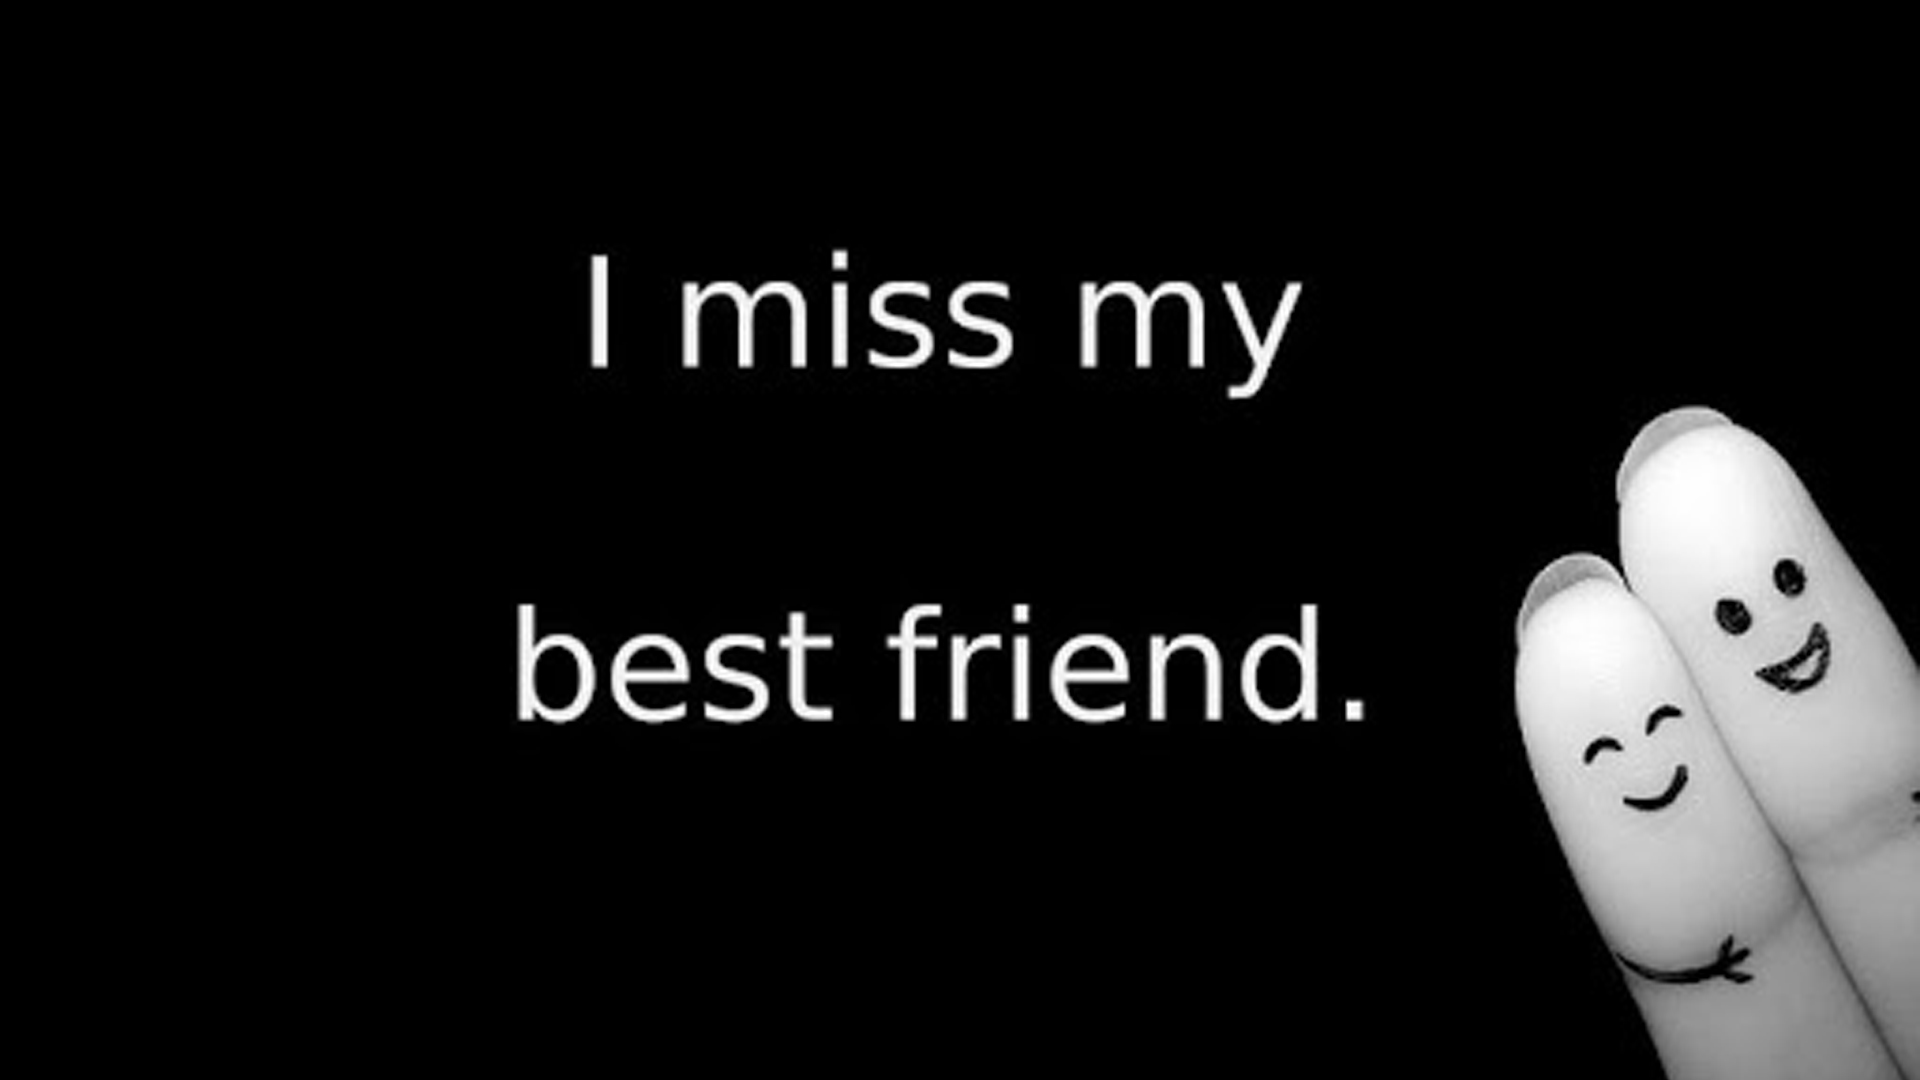 I Miss My Best Friend In Black Wallpaper 2K Best Friend